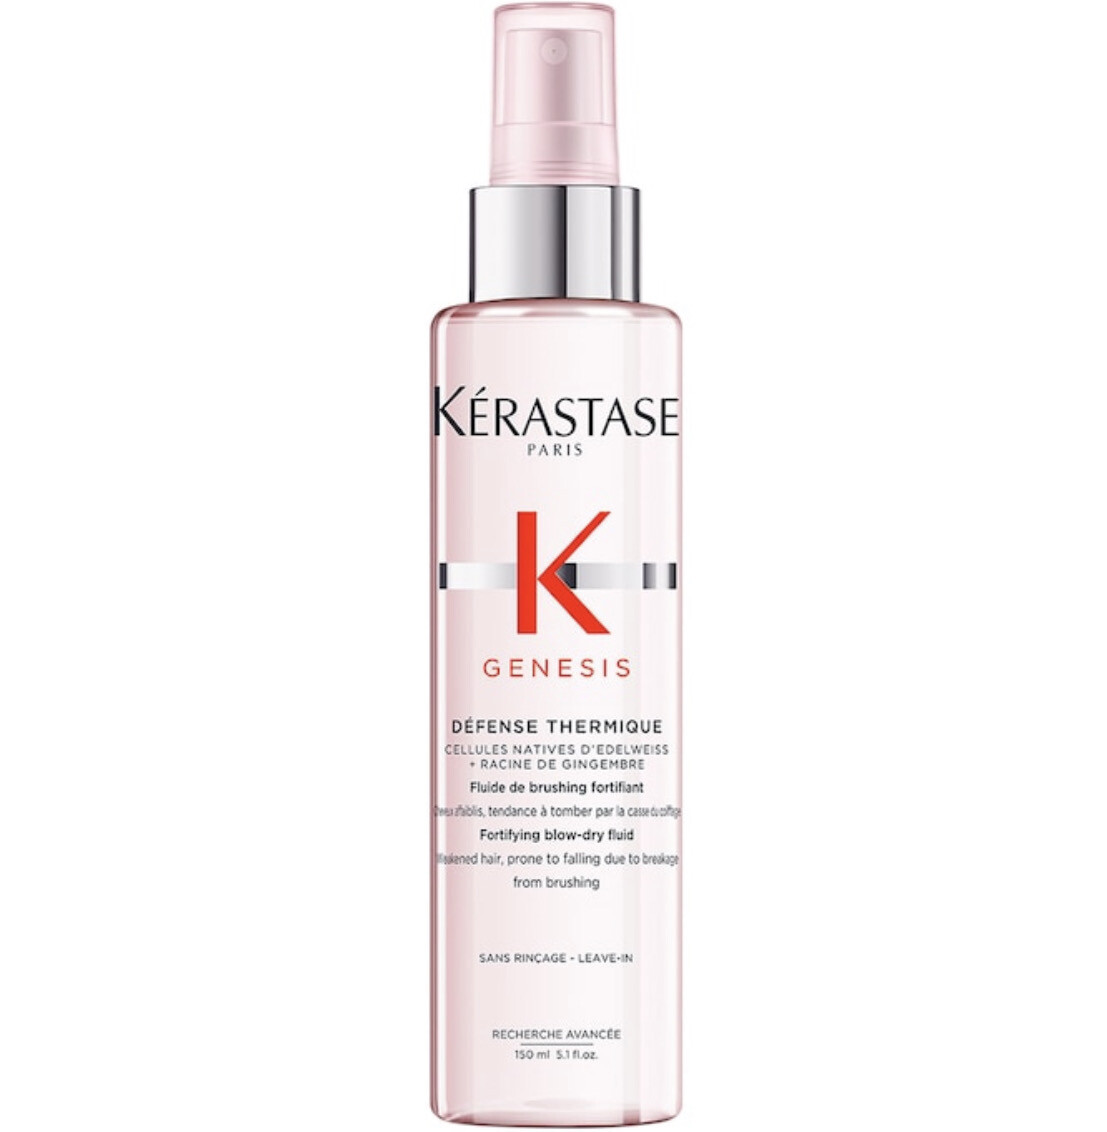 Kérastase - Genesis Heat Protecting Leave-In Treatment for Weakened Hair